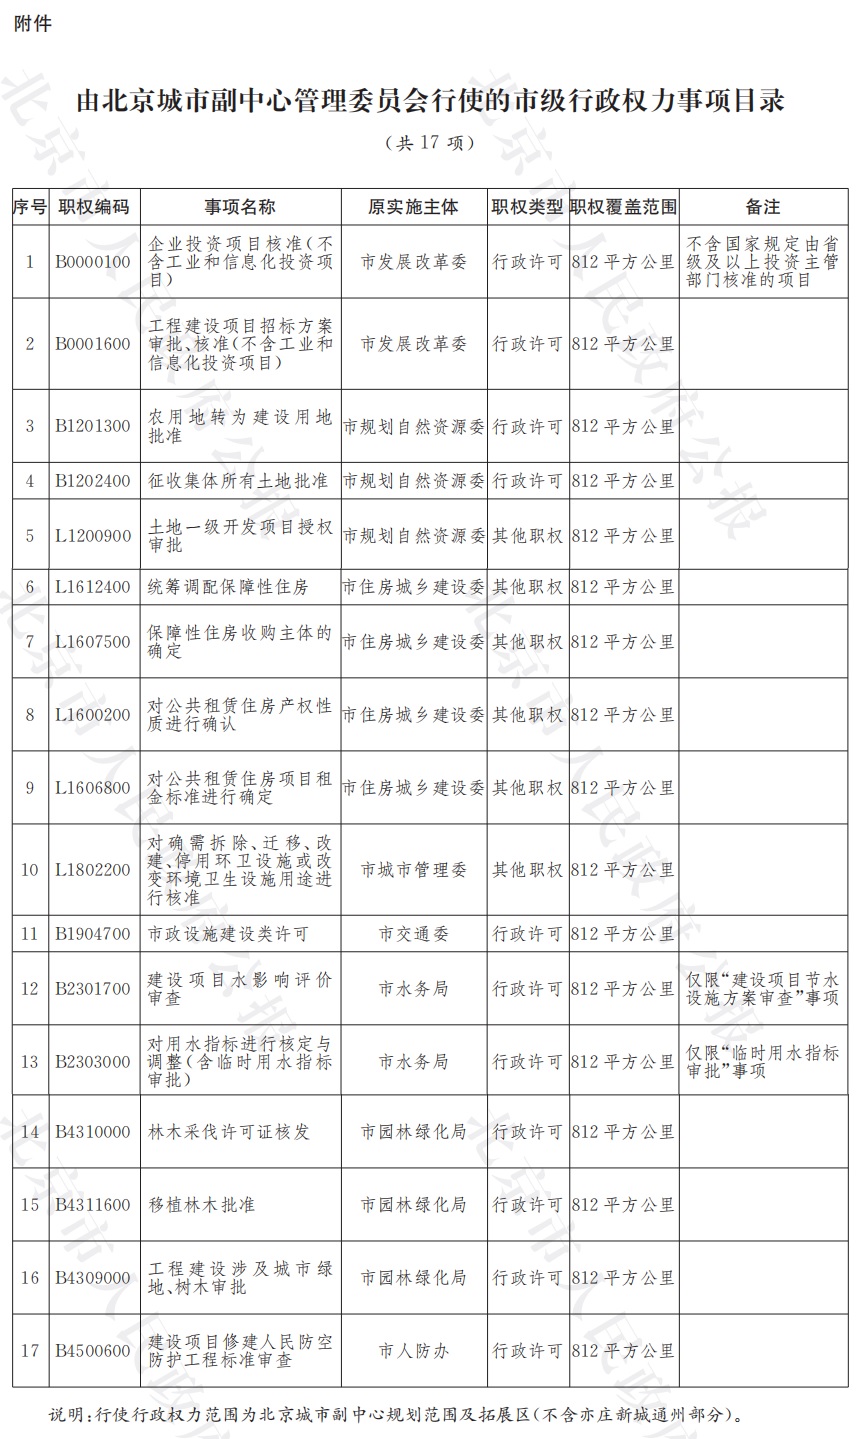 18-附件：由北京城市副中心管理委员会行使的市级行政权力事项目录.jpg